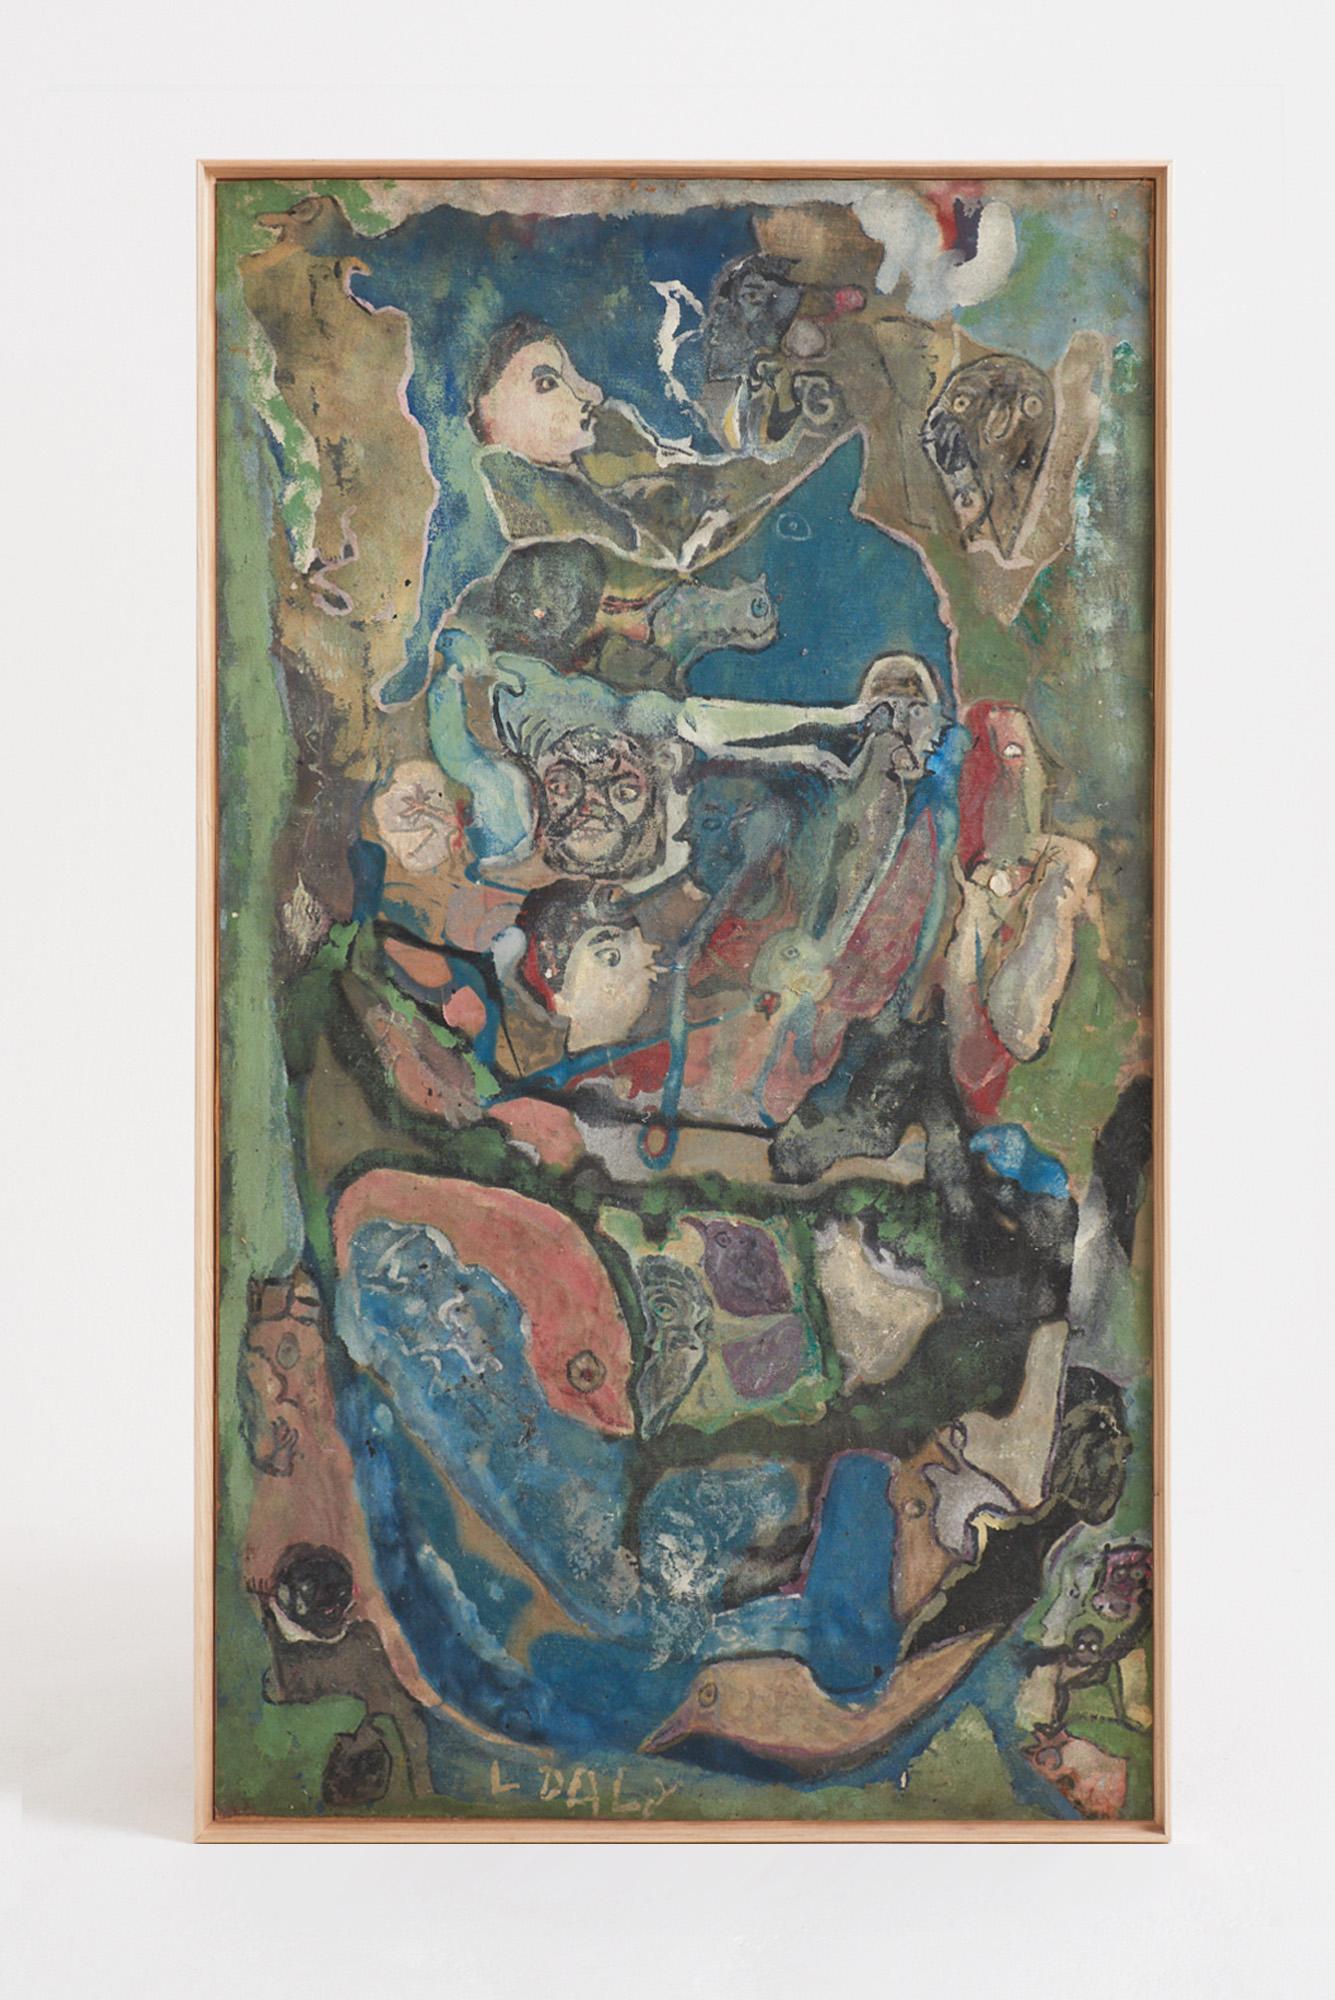 Ein großes abstraktes Gemälde
Medien auf der Tafel mischen. Unterschrieben L Daly.
Spanien, Mitte 20. Jahrhundert
139 cm hoch x 79 cm breit x 5 cm tief